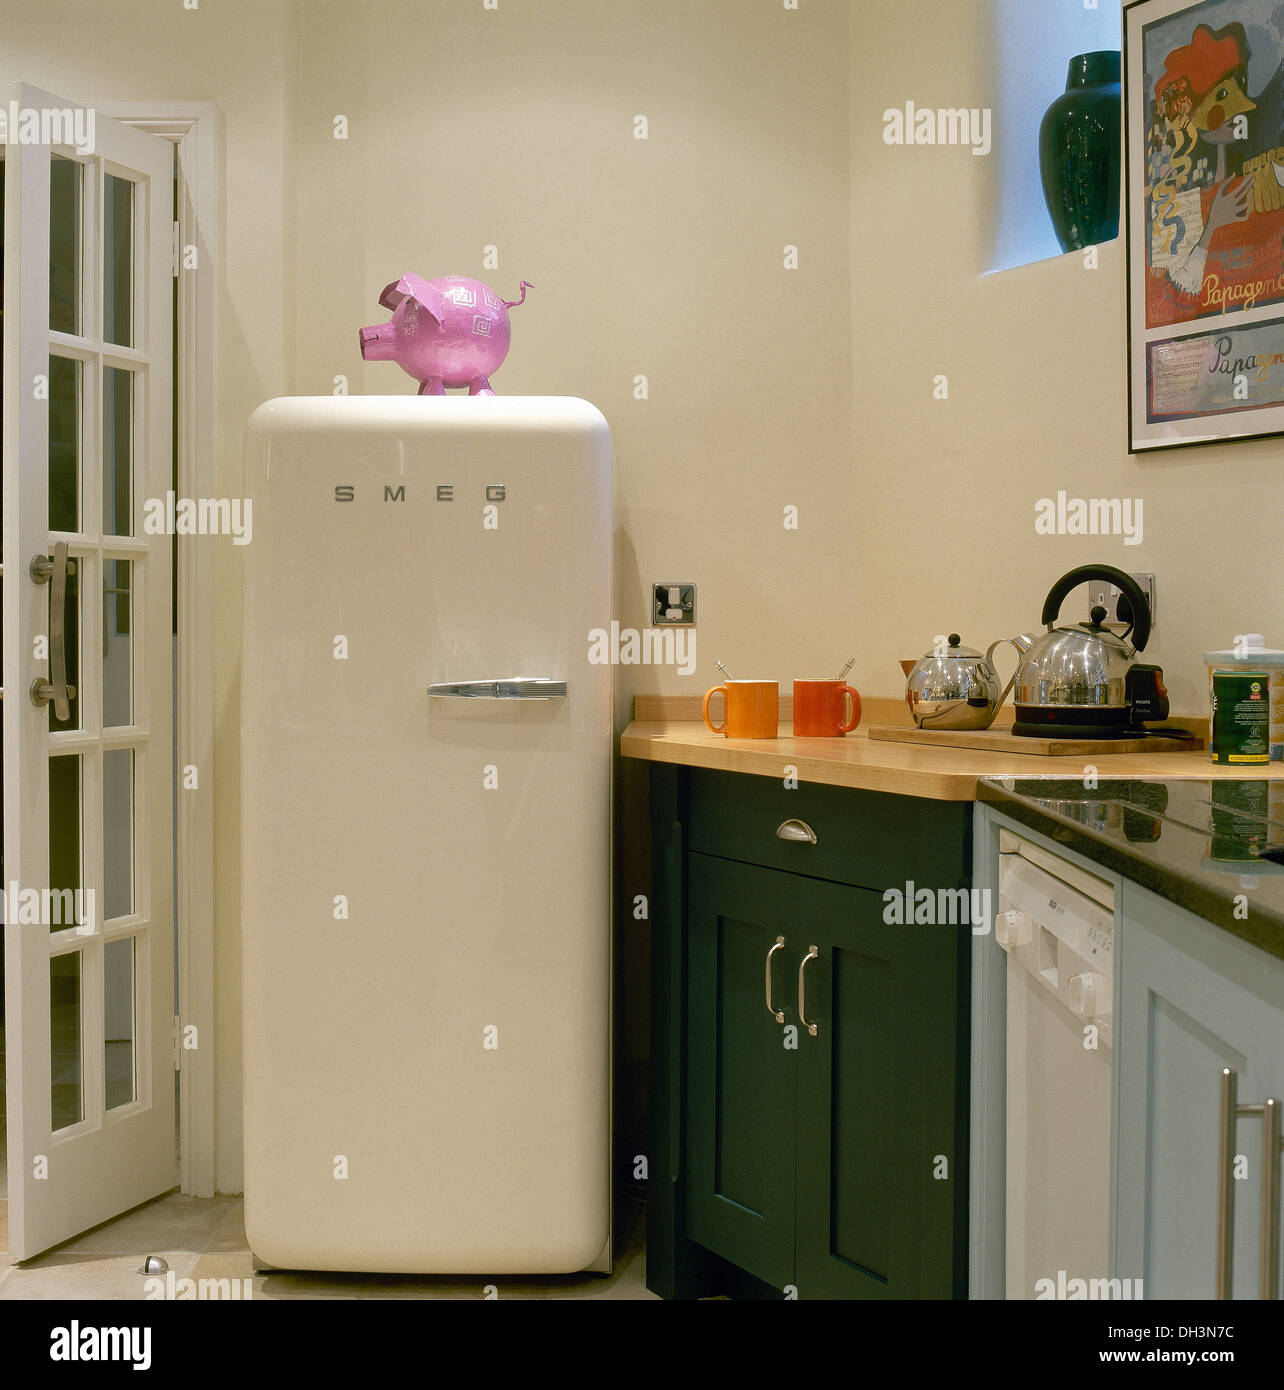 Rosa rosa in plastica su Smeg frigorifero in un angolo della cucina moderna  con acciaio inox bollitore teiera sul piano di lavoro Foto stock - Alamy